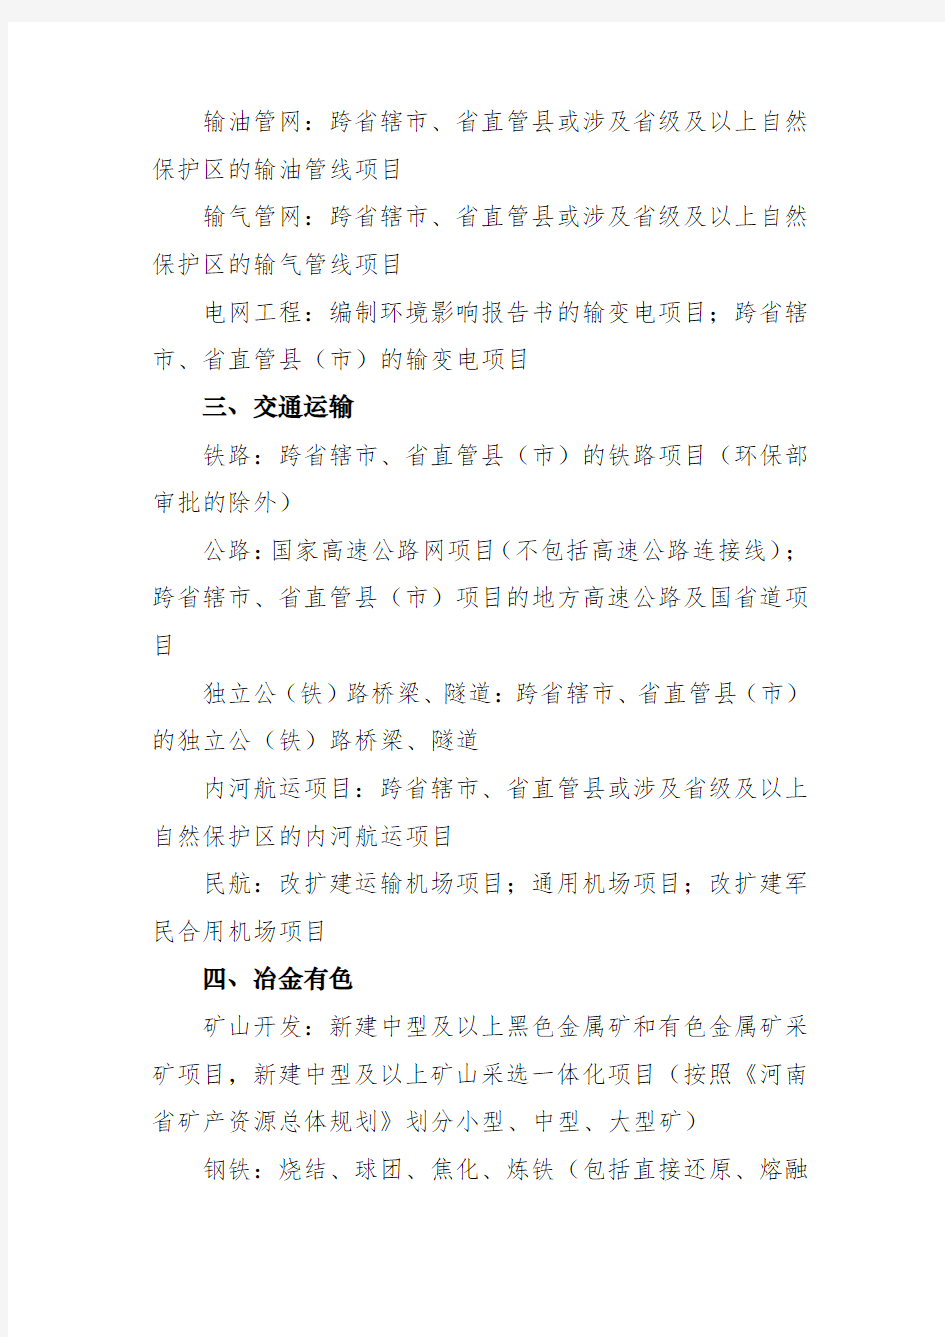 河南省环境保护厅审批环境影响评价文件的建设项目目录(2016)